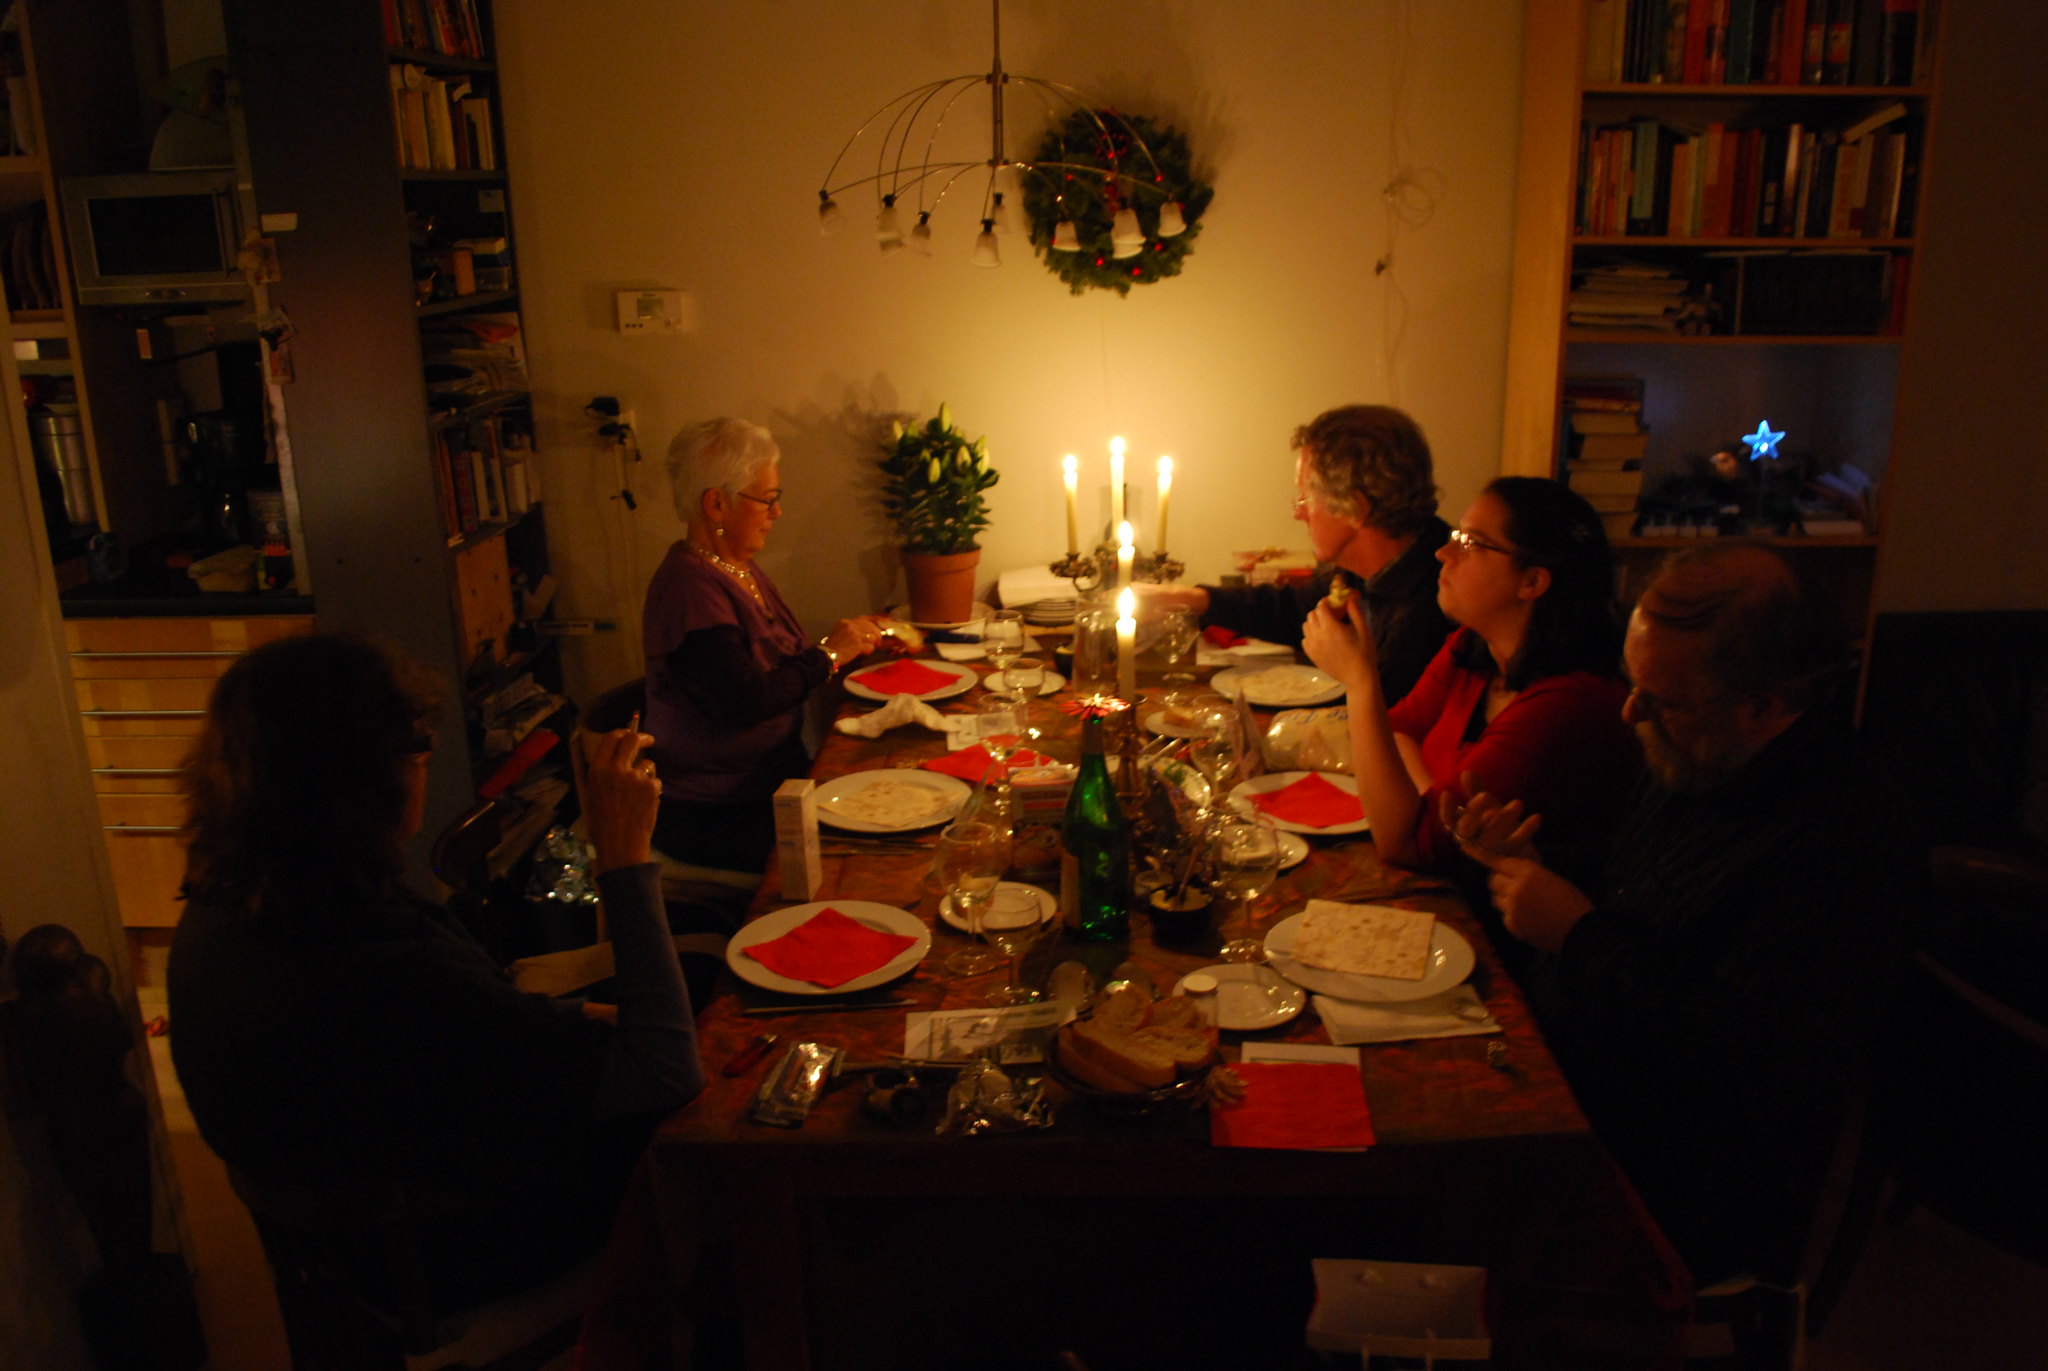 Family members having Christmas dinner | Source: Flickr